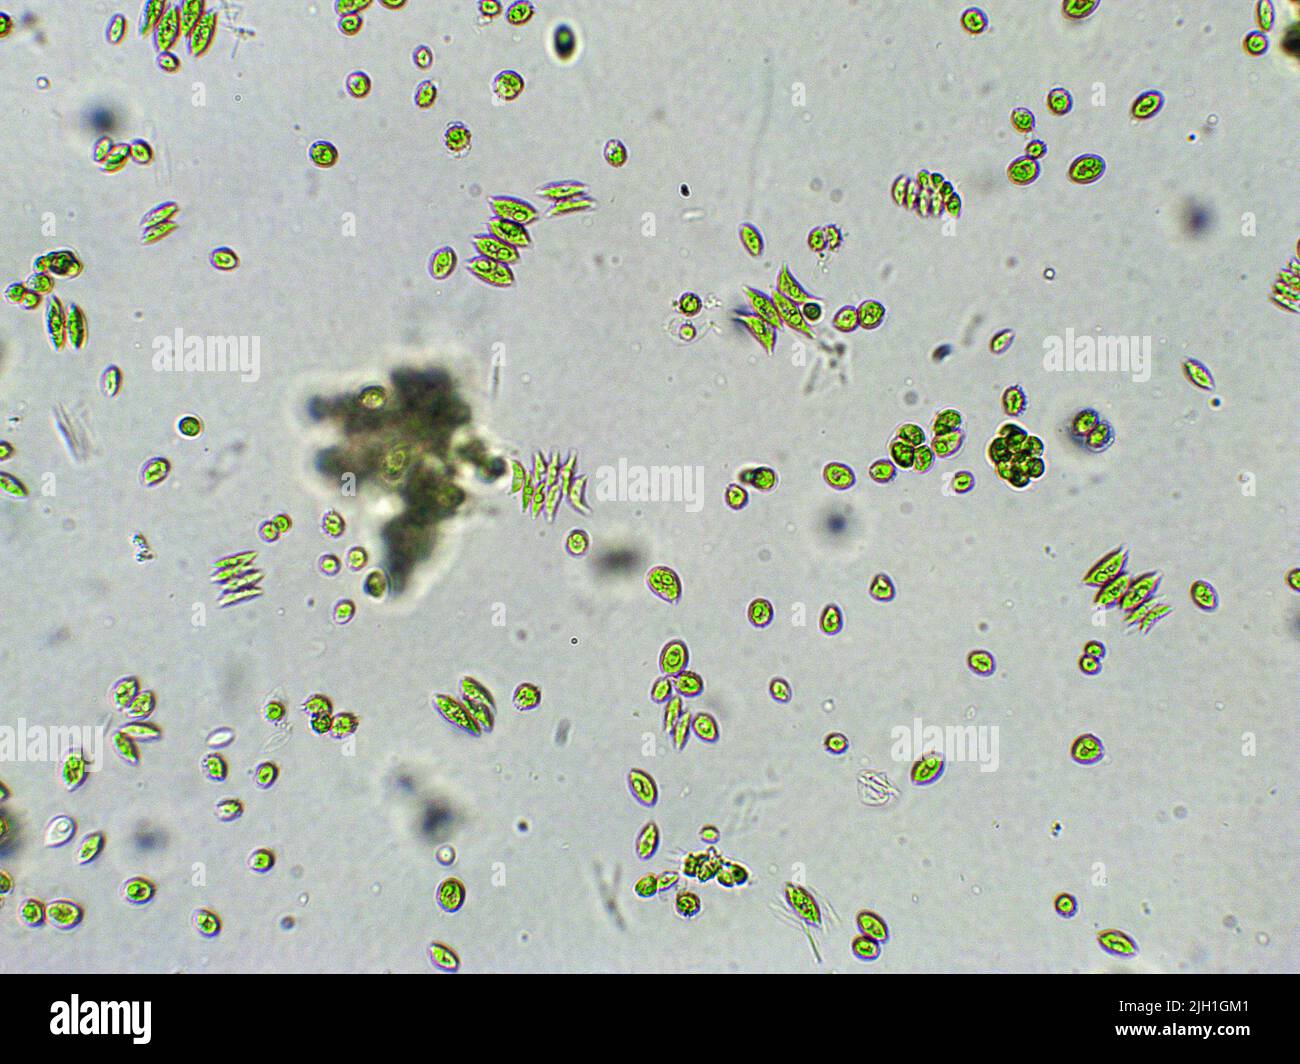 Scenedesmus sp. Alghe verdi sotto vista microscopica Foto Stock